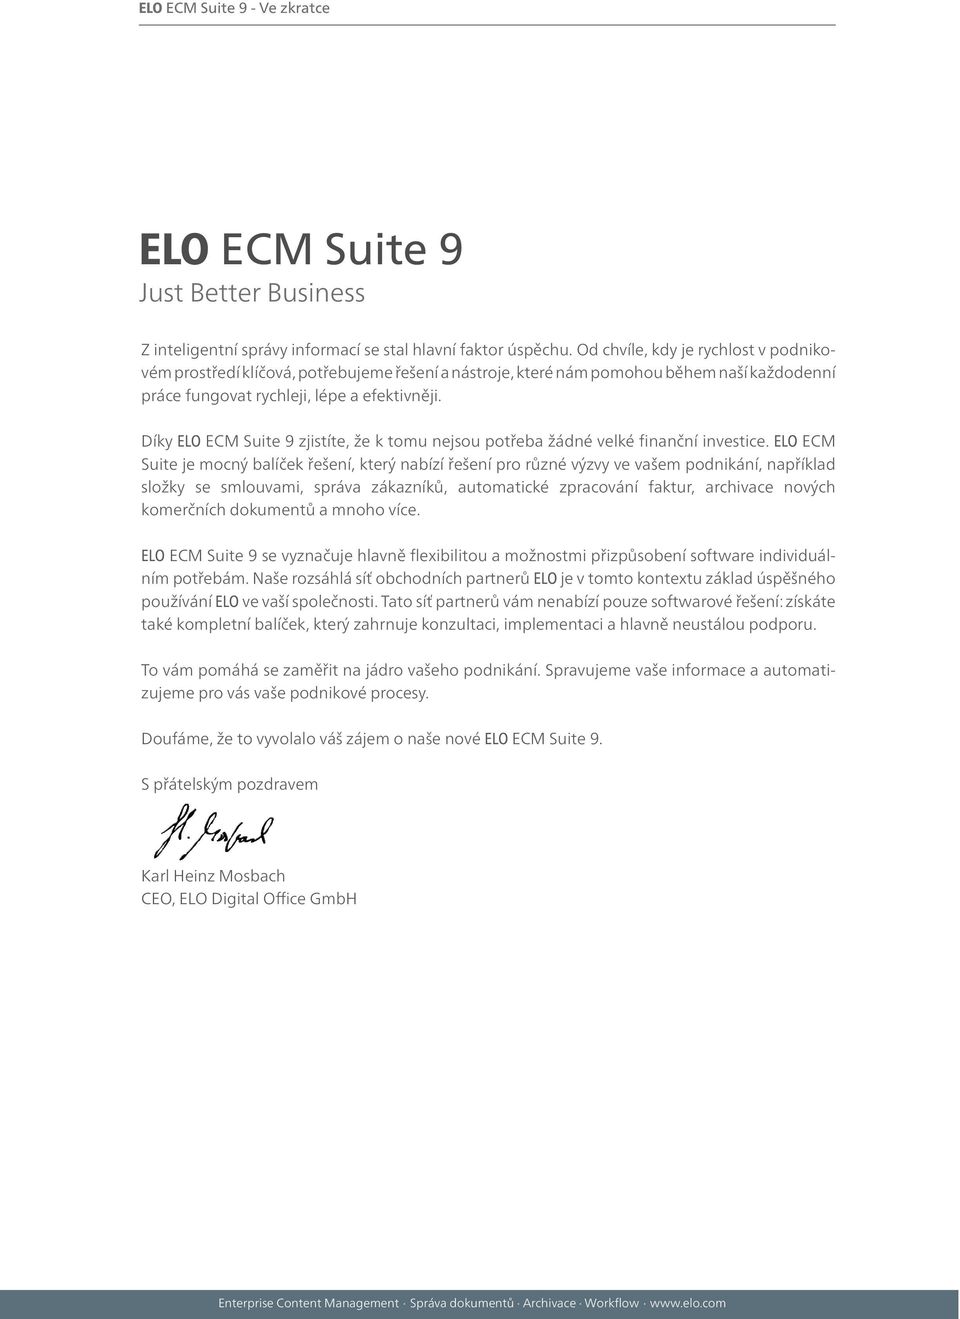 Díky ELO ECM Suite 9 zjistíte, že k tomu nejsou potřeba žádné velké finanční investice.